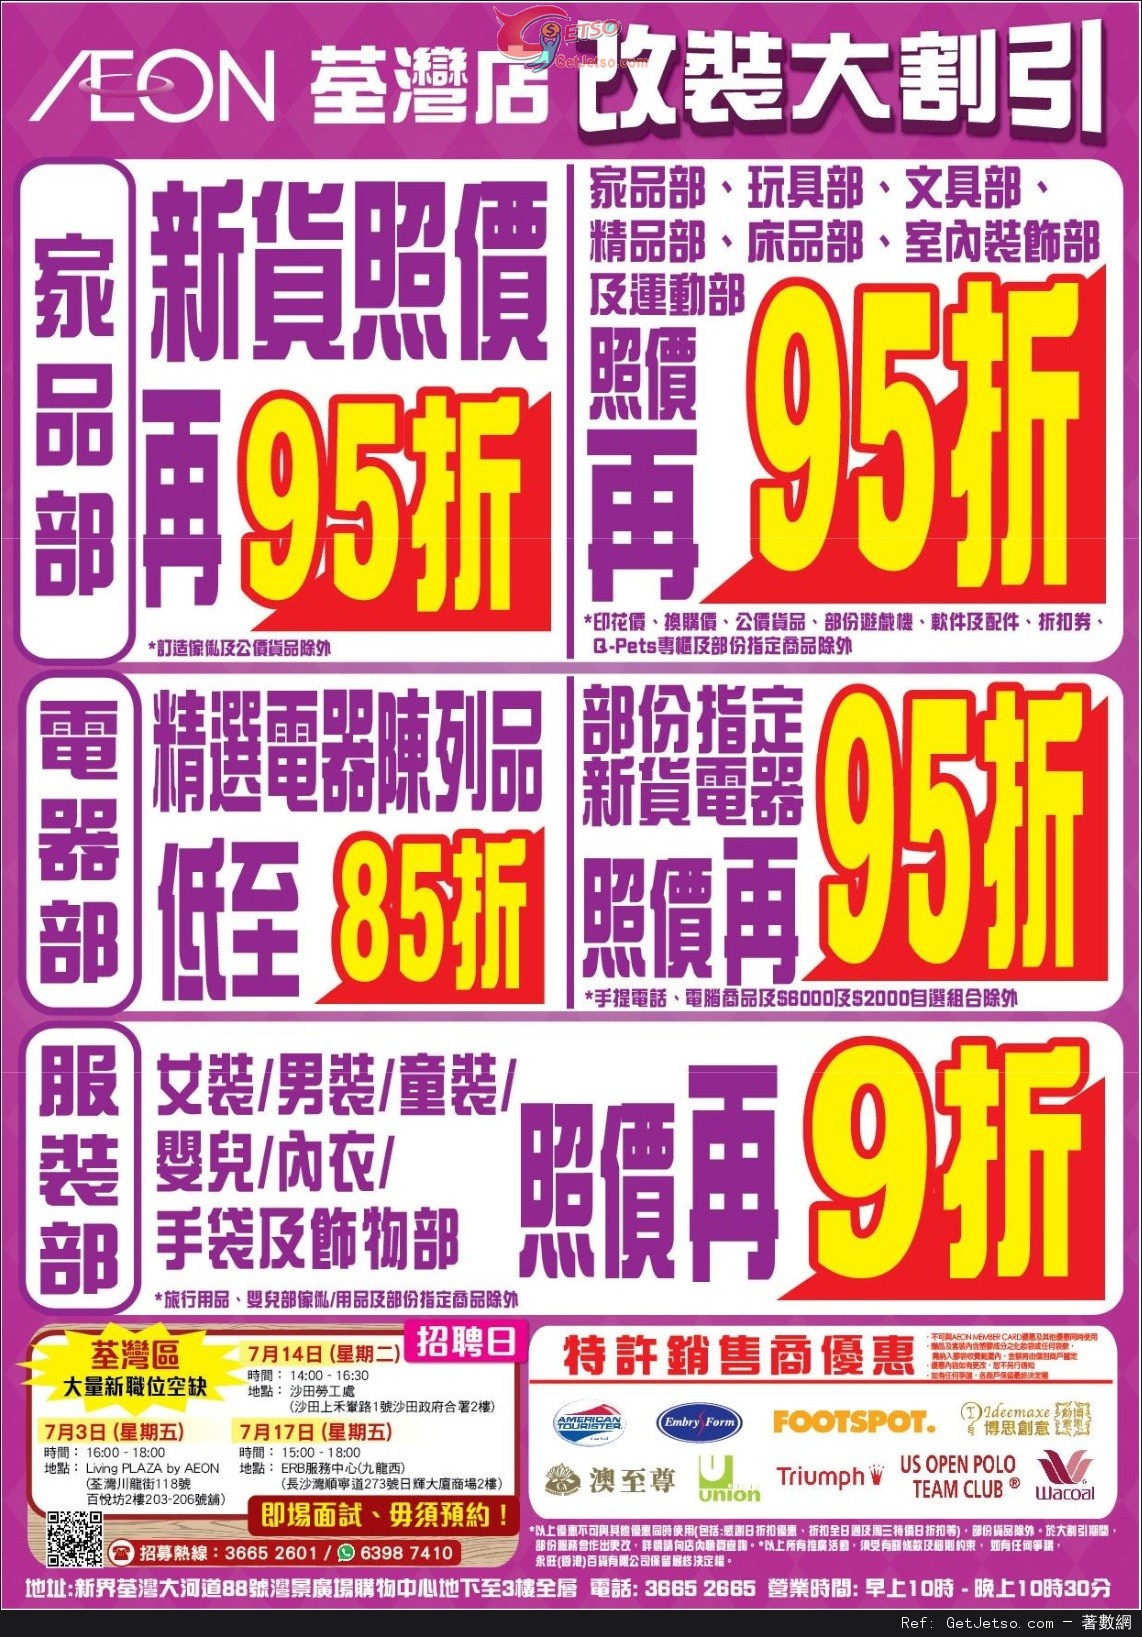 AEON 荃灣改裝大割引第一階段減價優惠(至15年7月20日)圖片2